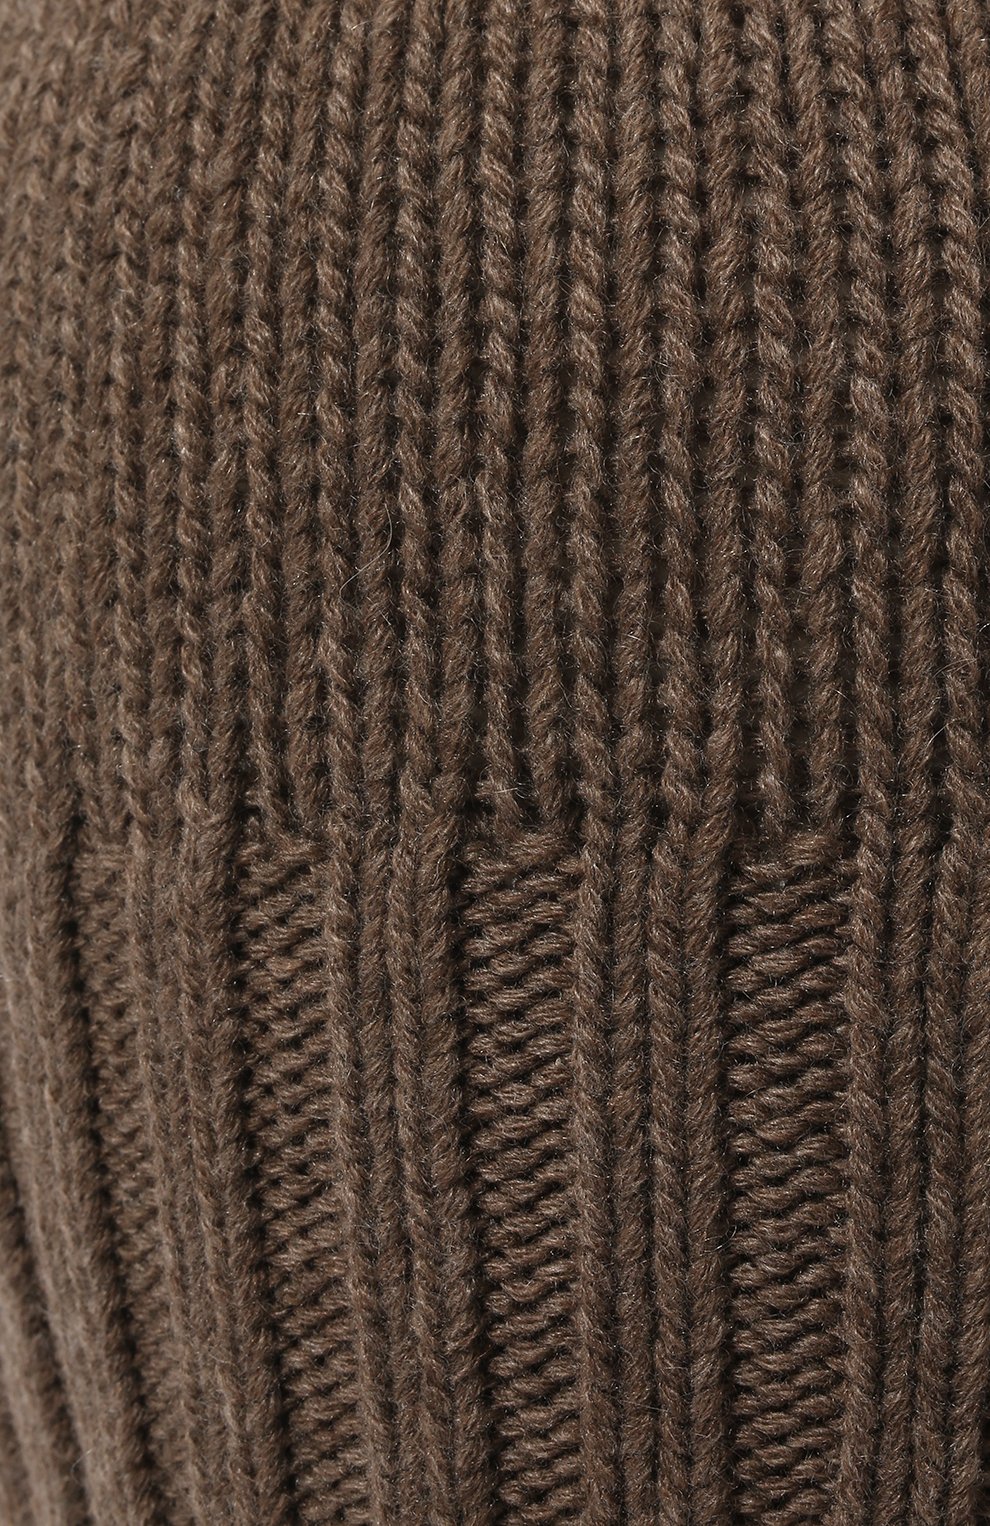 Мужская кашемировая шапка INVERNI коричневого цвета, арт. 4226 CM | Фото 3 (Материал: Текстиль, Кашемир, Шерсть; Кросс-КТ: Трикотаж)